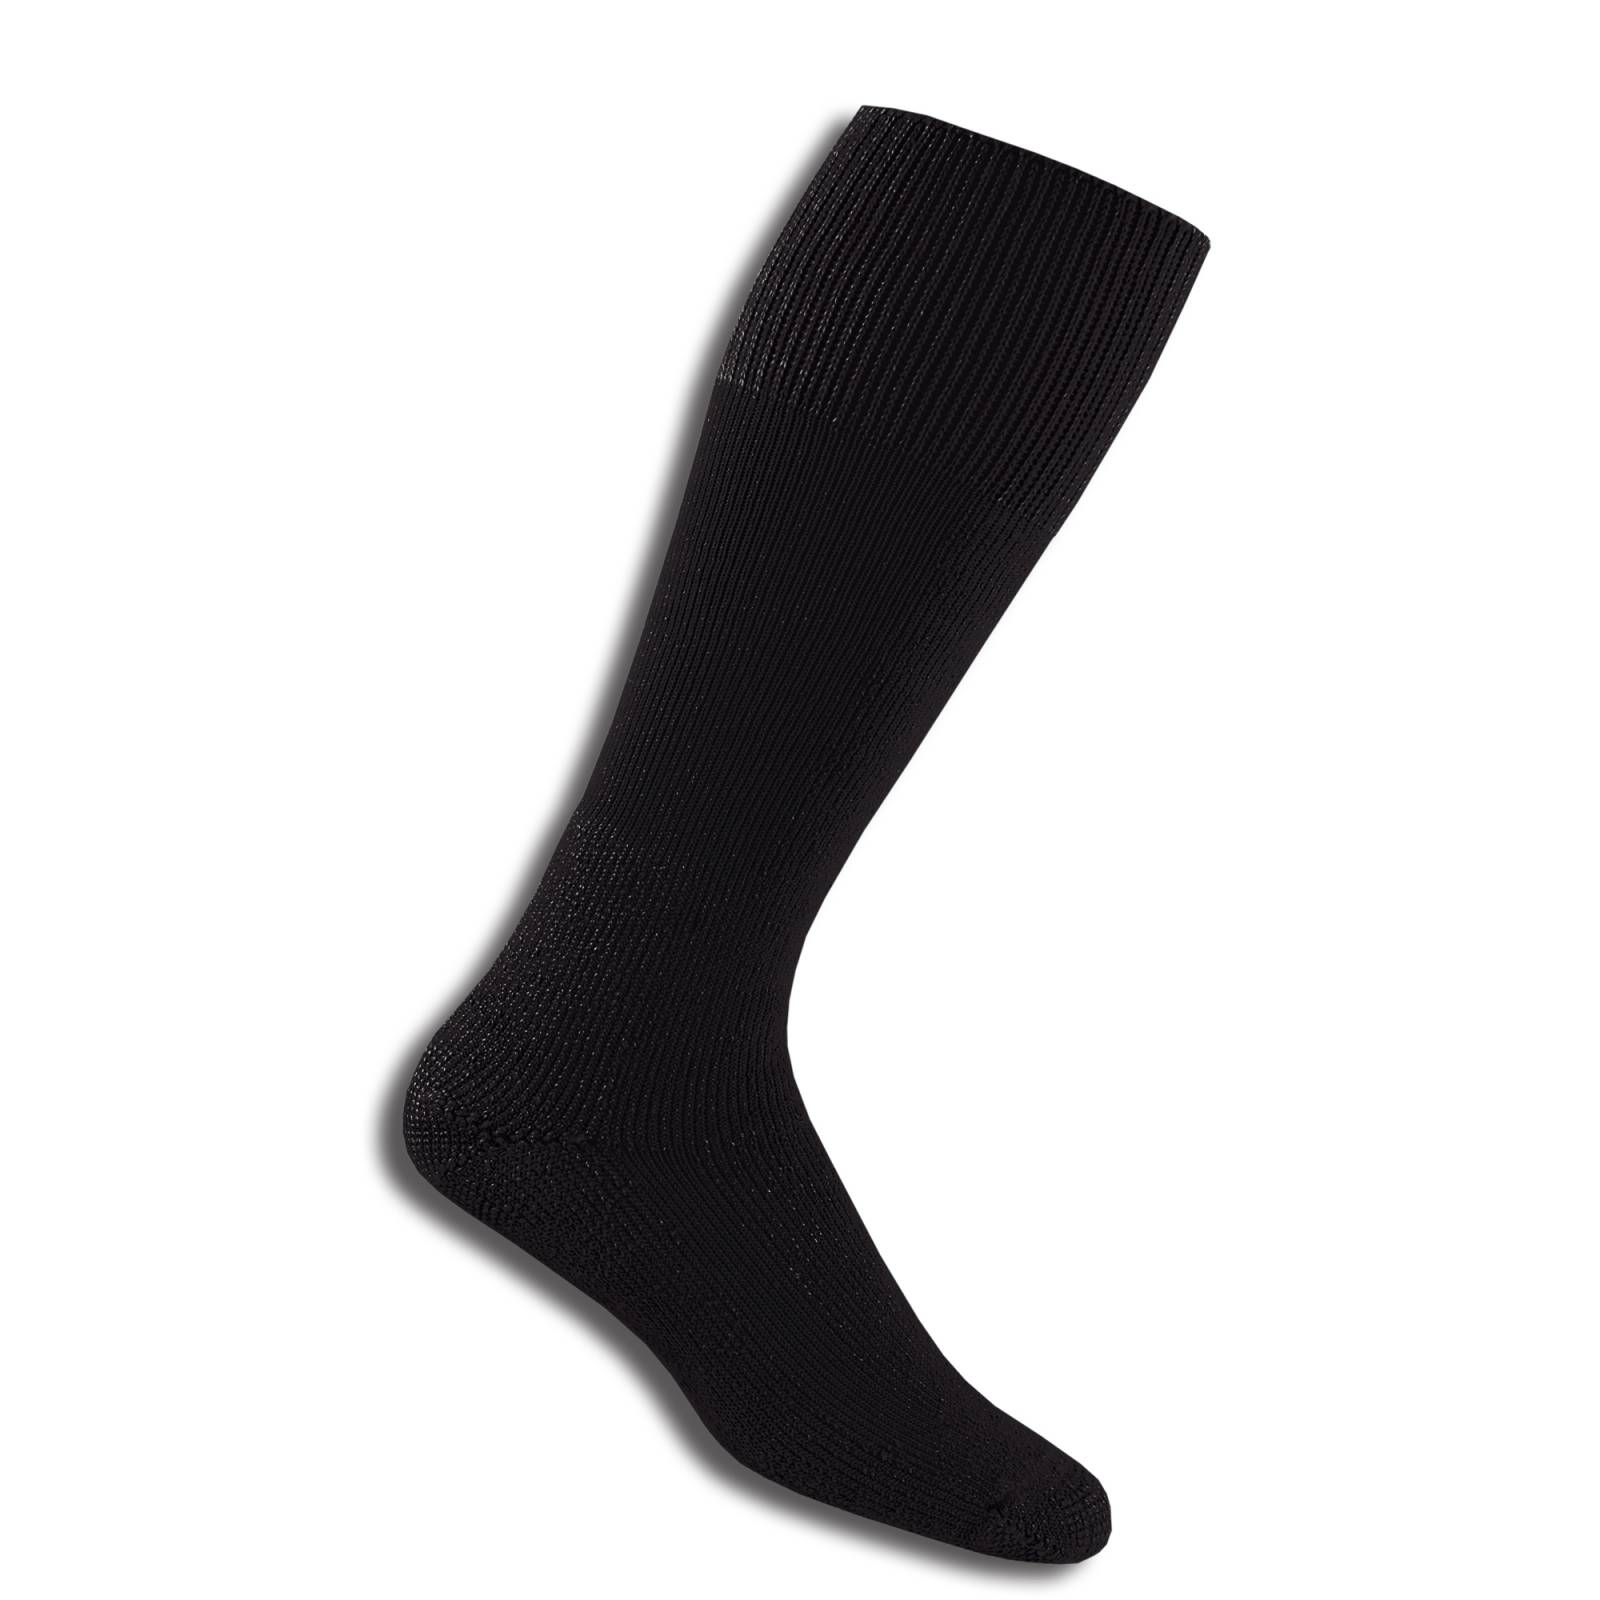 Thorlos Black Combat Boot Socks